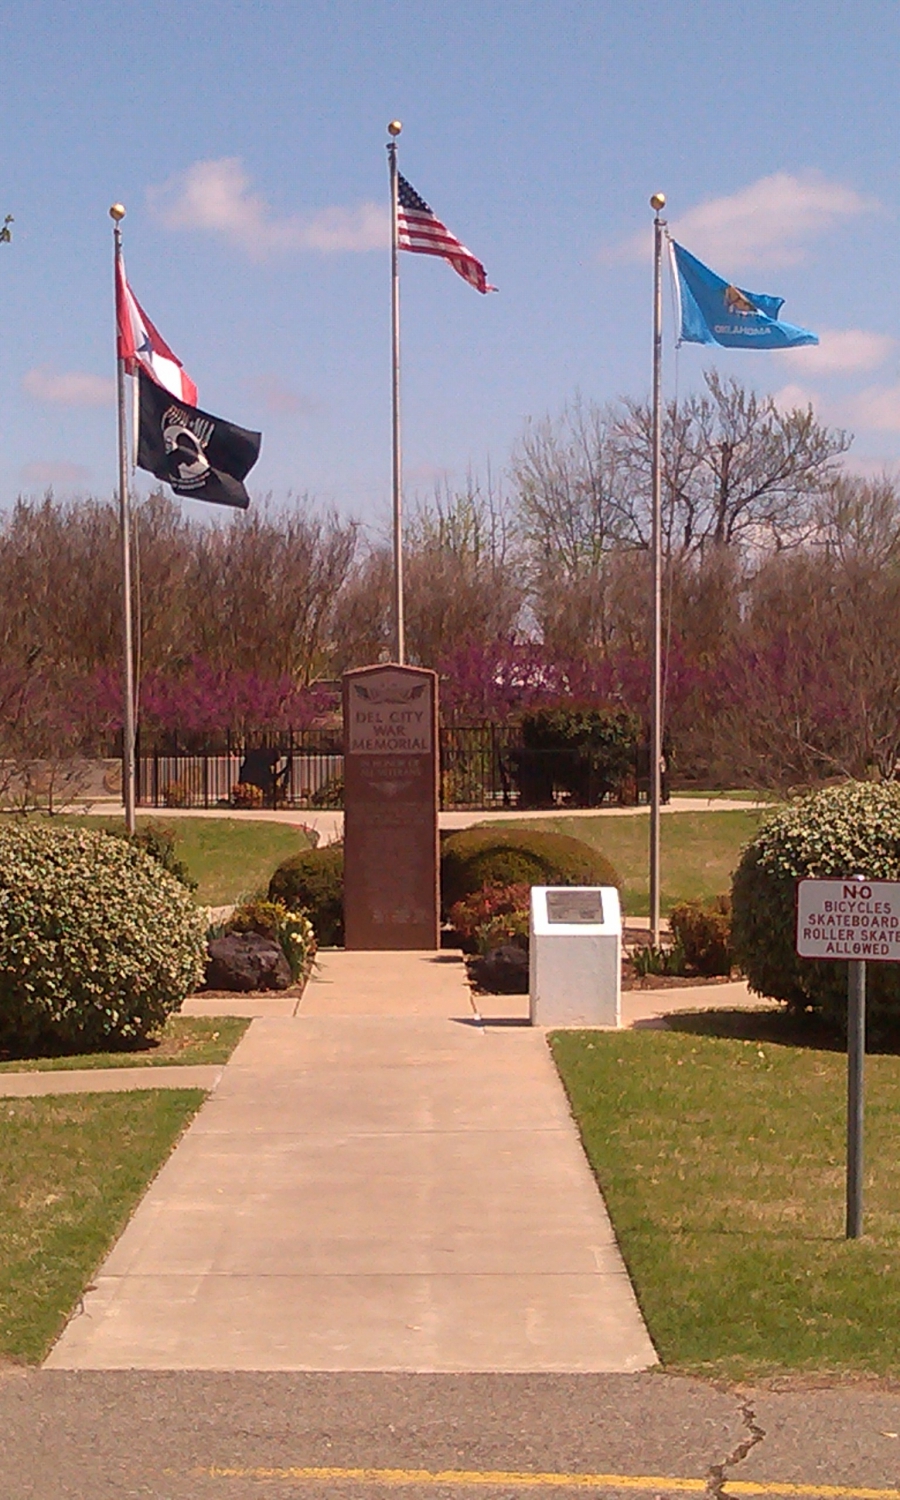 Patriot Park - Del City, Oklahoma War Memorial